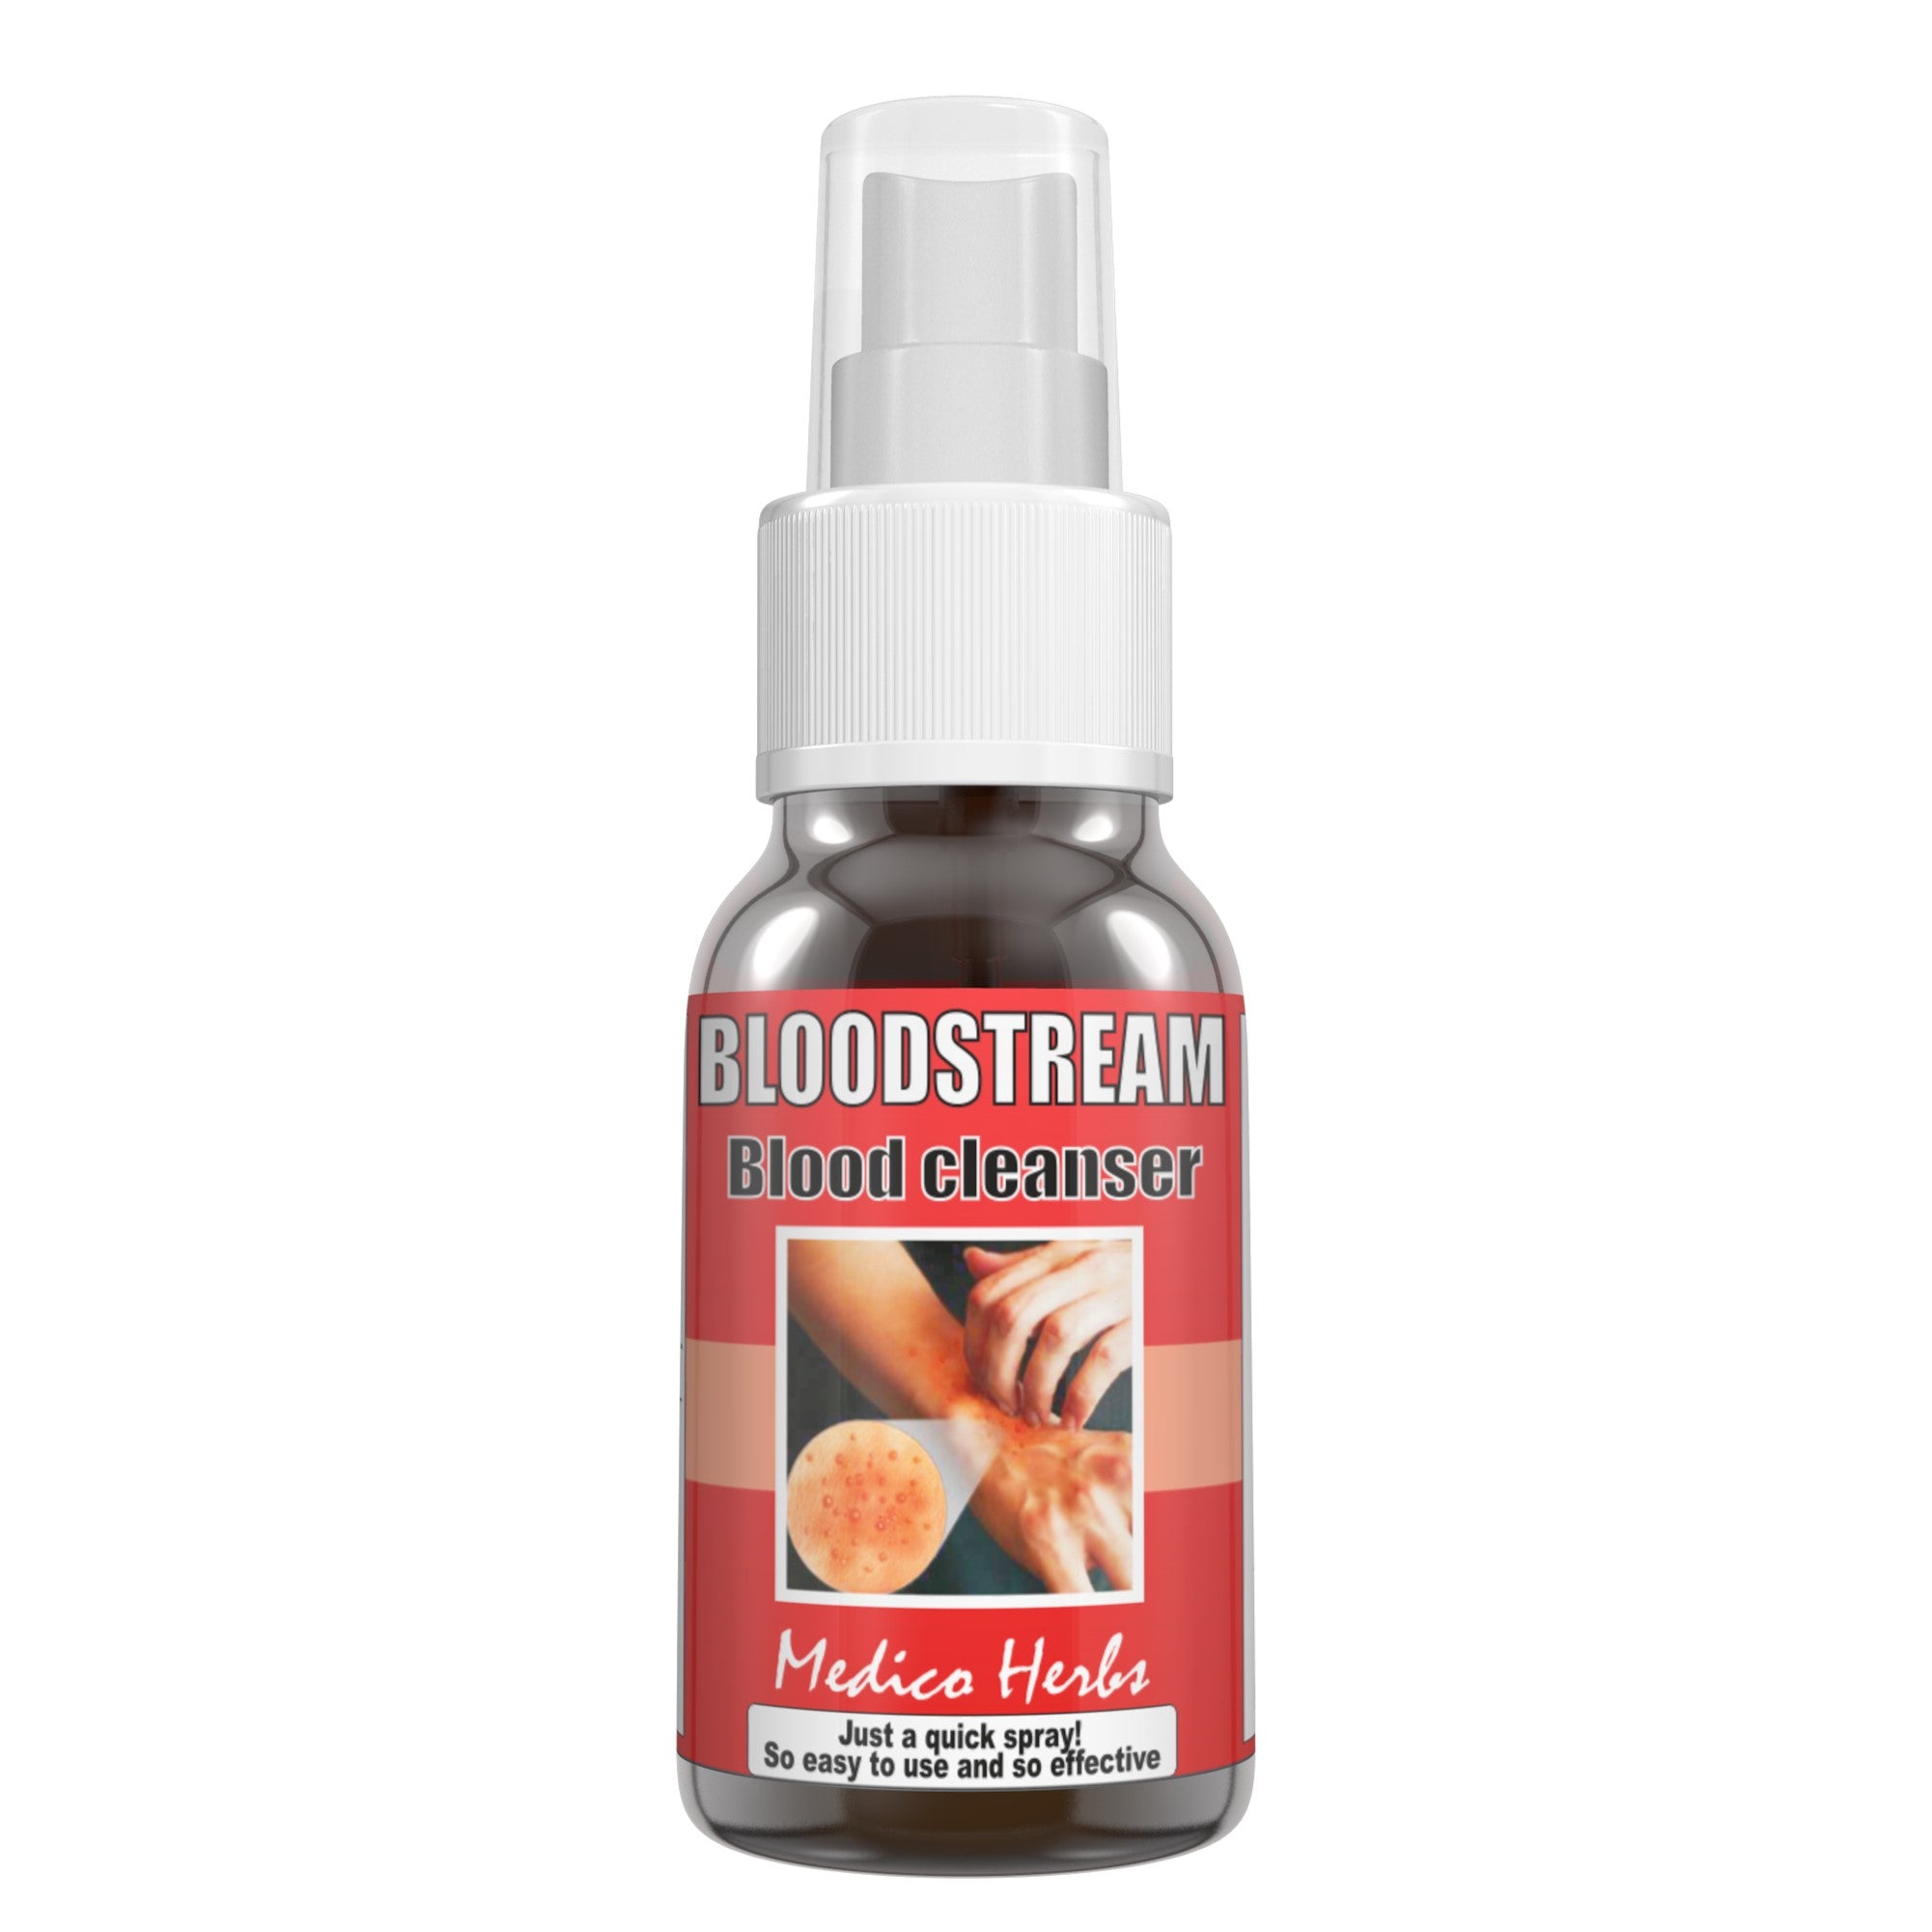 Bloodstream Spray & Kigelia Cream for Eczema, Psoriasis, Acne 100% Natural